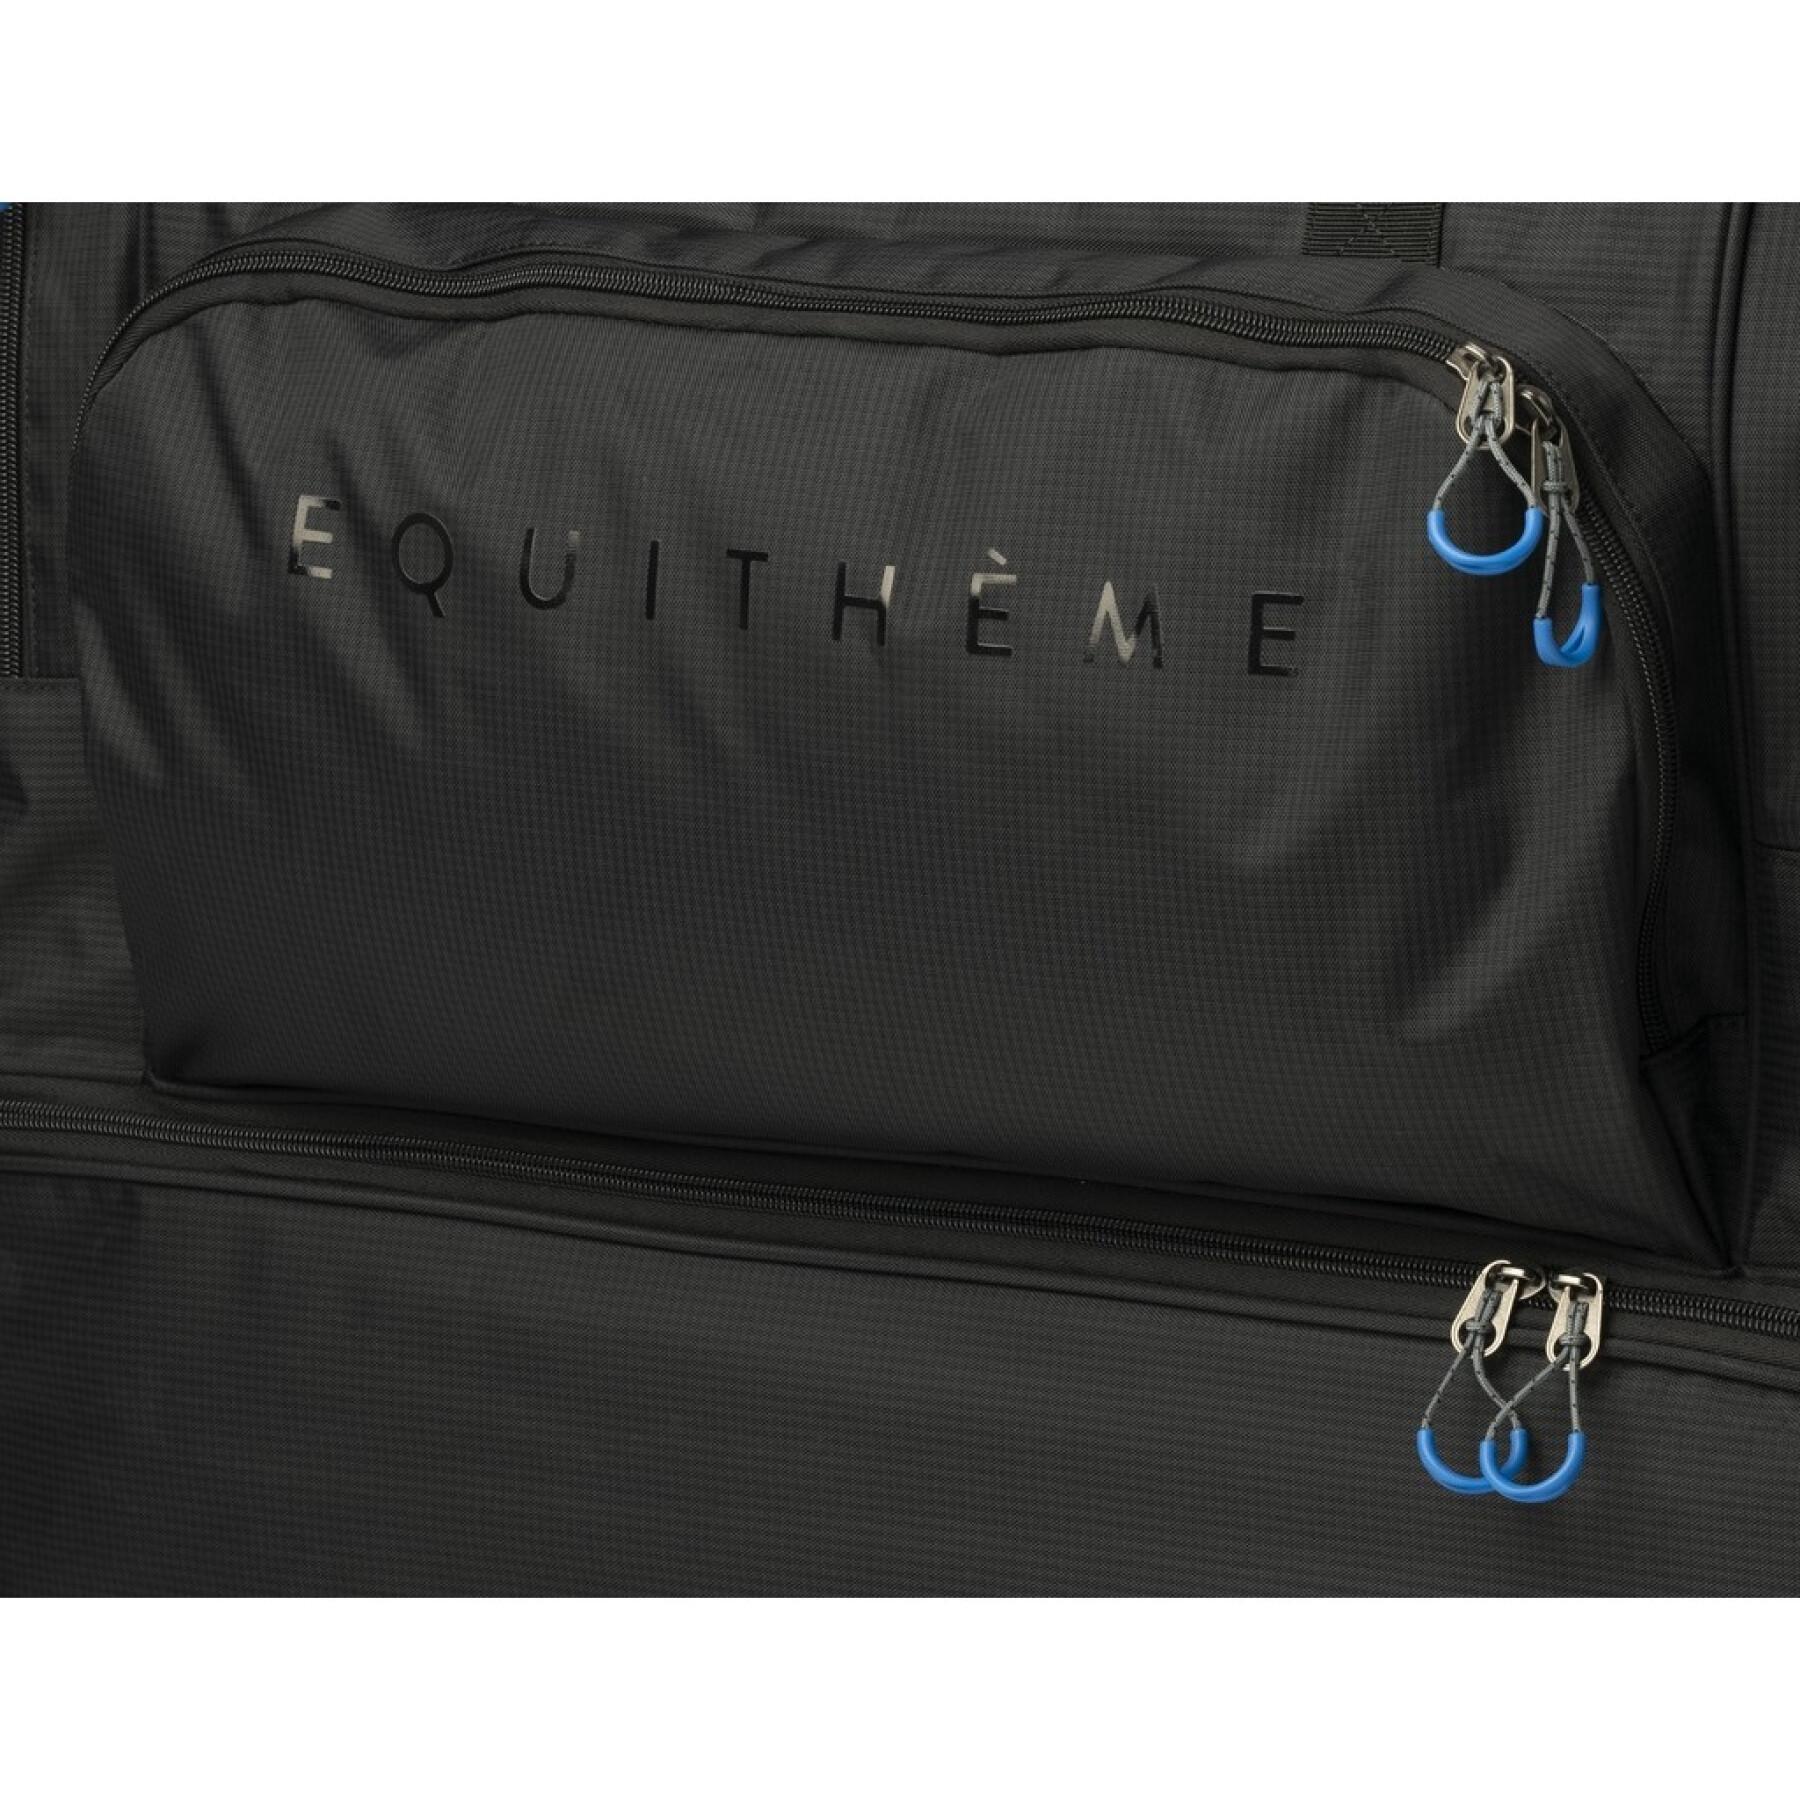 Sport travel bag large Equithème